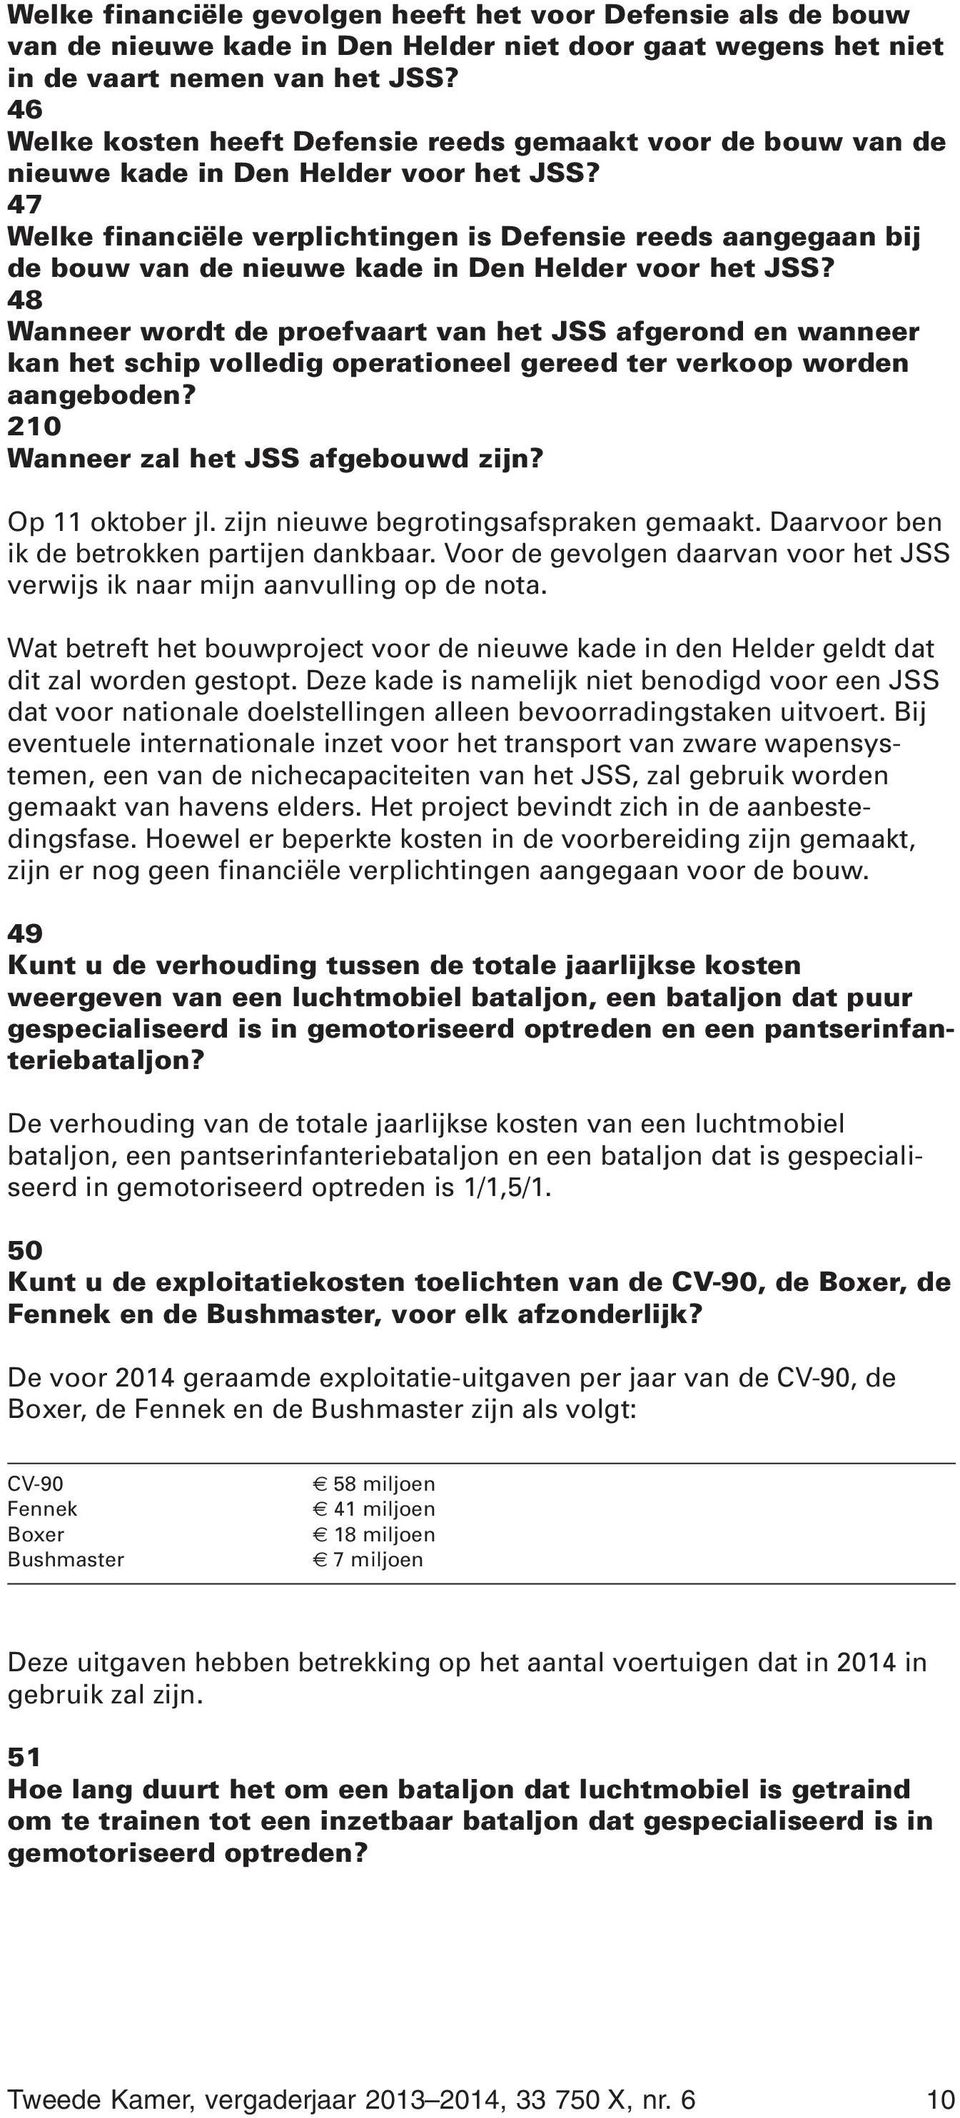 47 Welke financiële verplichtingen is Defensie reeds aangegaan bij de bouw van de nieuwe kade in Den Helder voor het JSS?